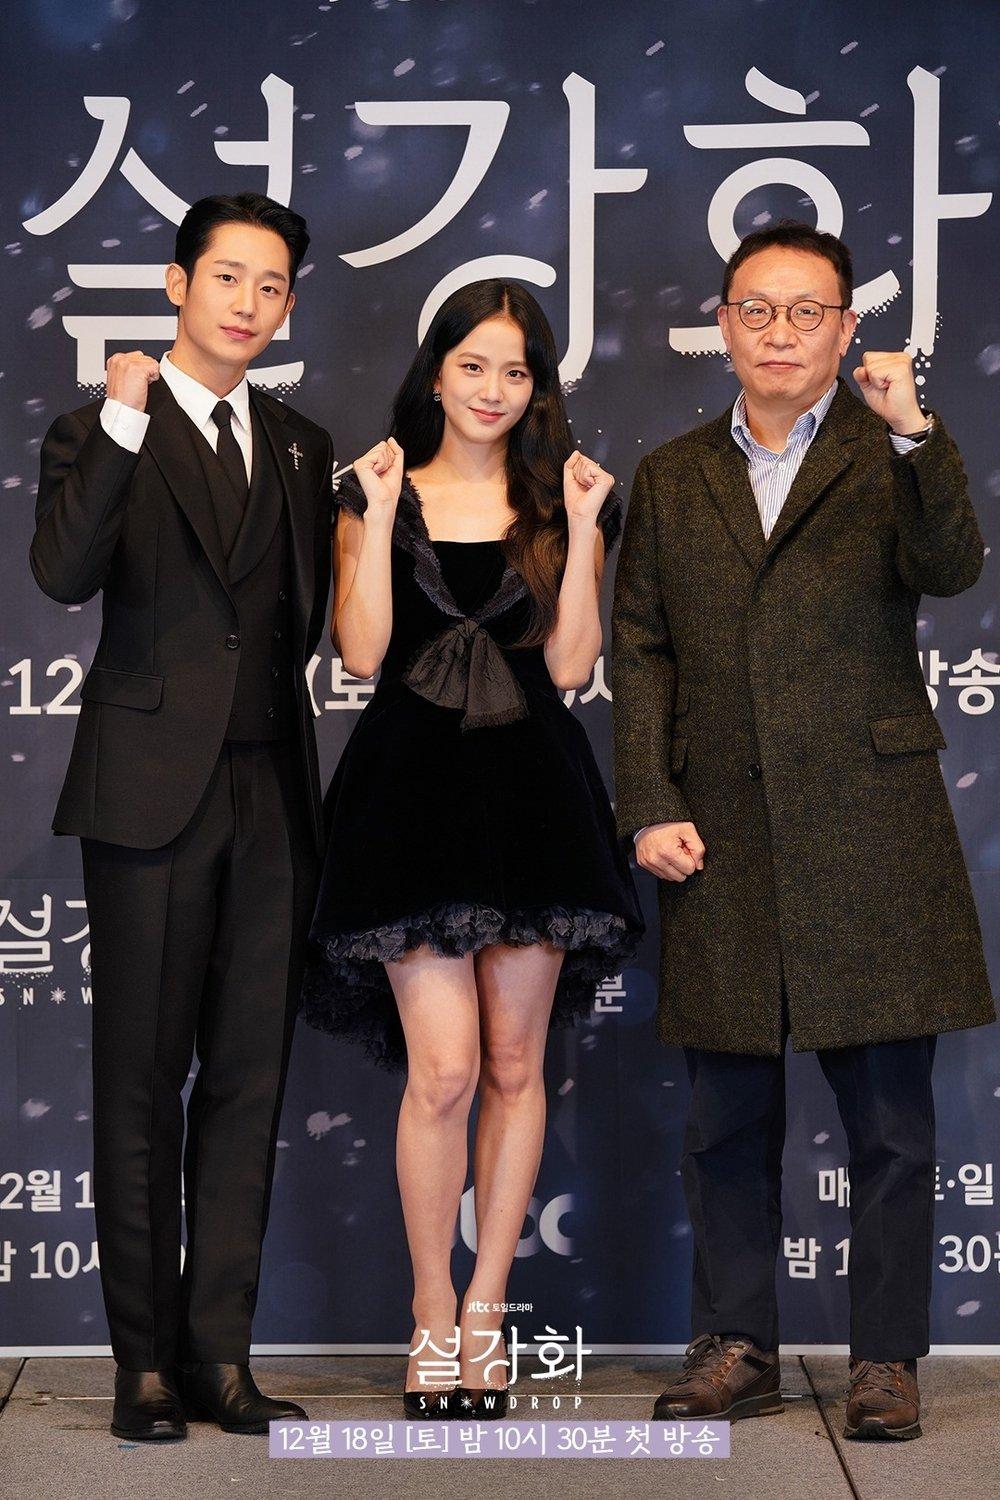 Buổi họp báo với sự góp mặt của Jisoo, Jung Hae In và đạo diễn Jo Hyun Tak (Ảnh: Internet)